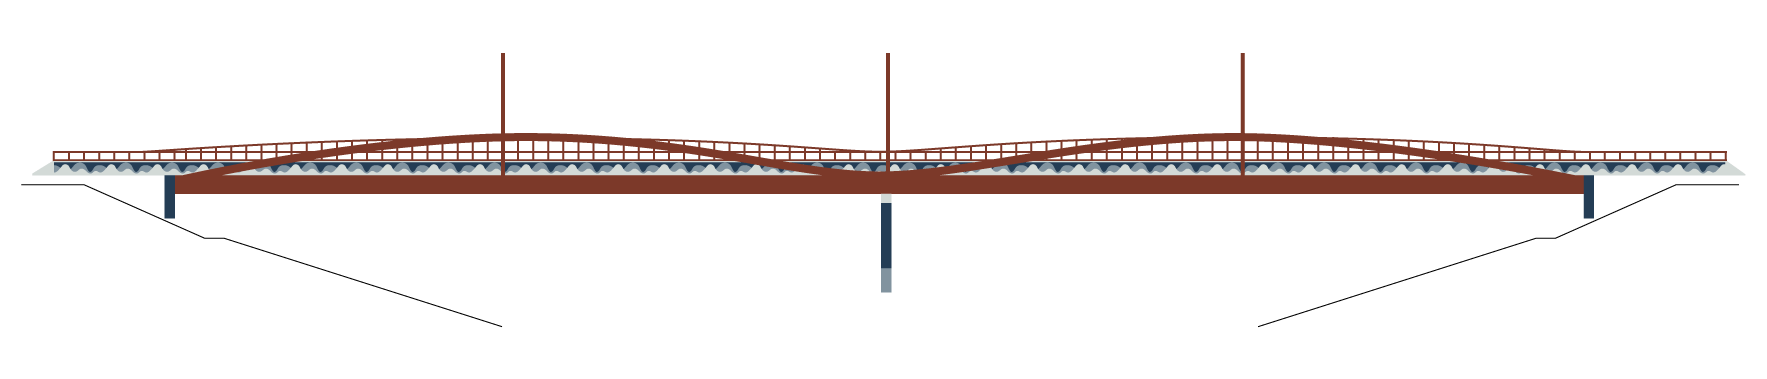 Overpass Bridge Design